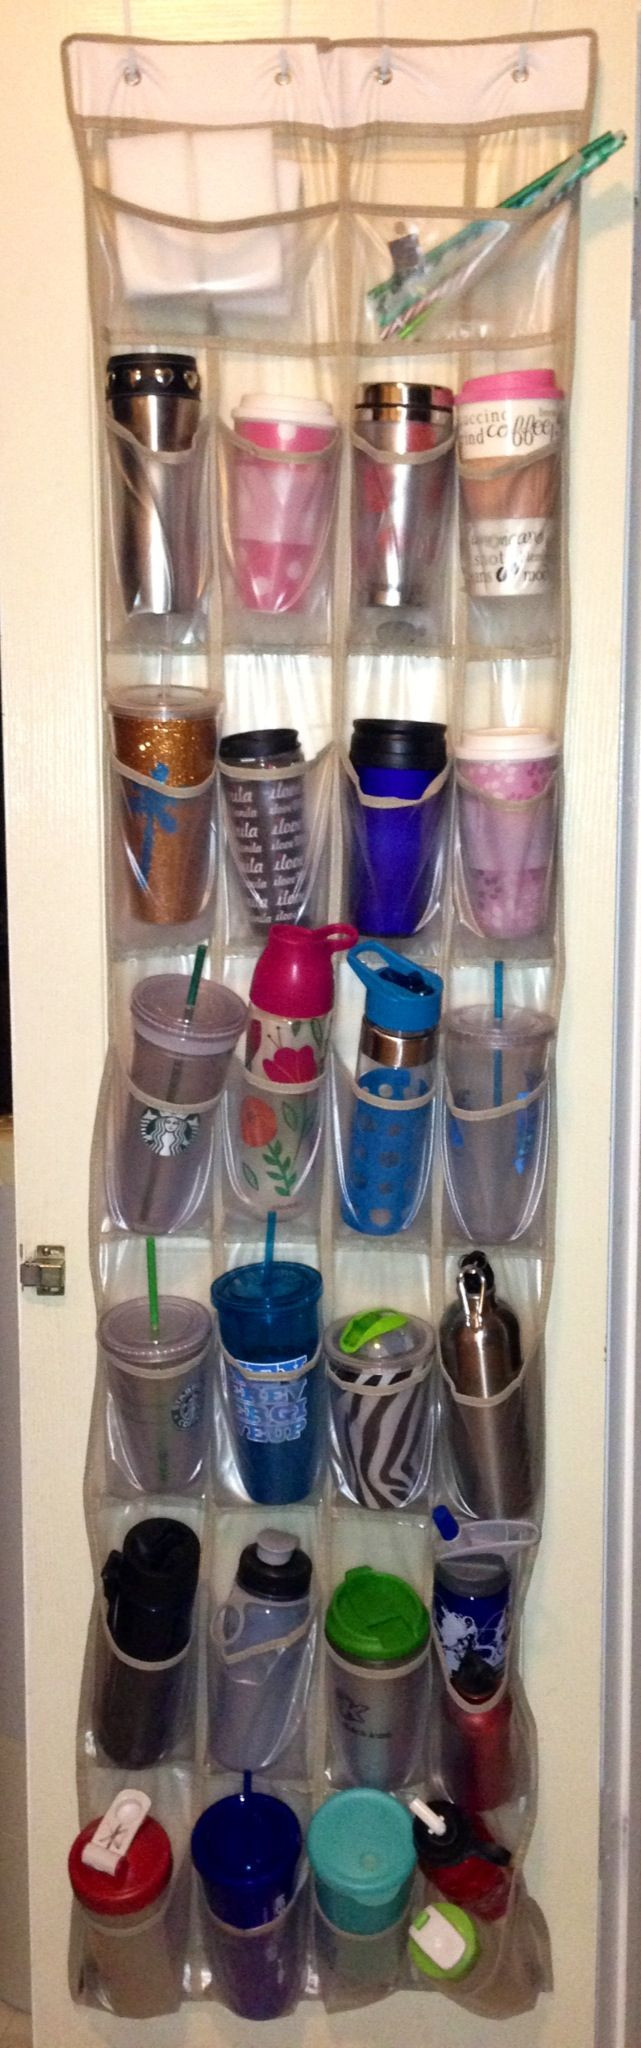 Water Bottle Organizer
 25 best ideas about Water bottle storage on Pinterest